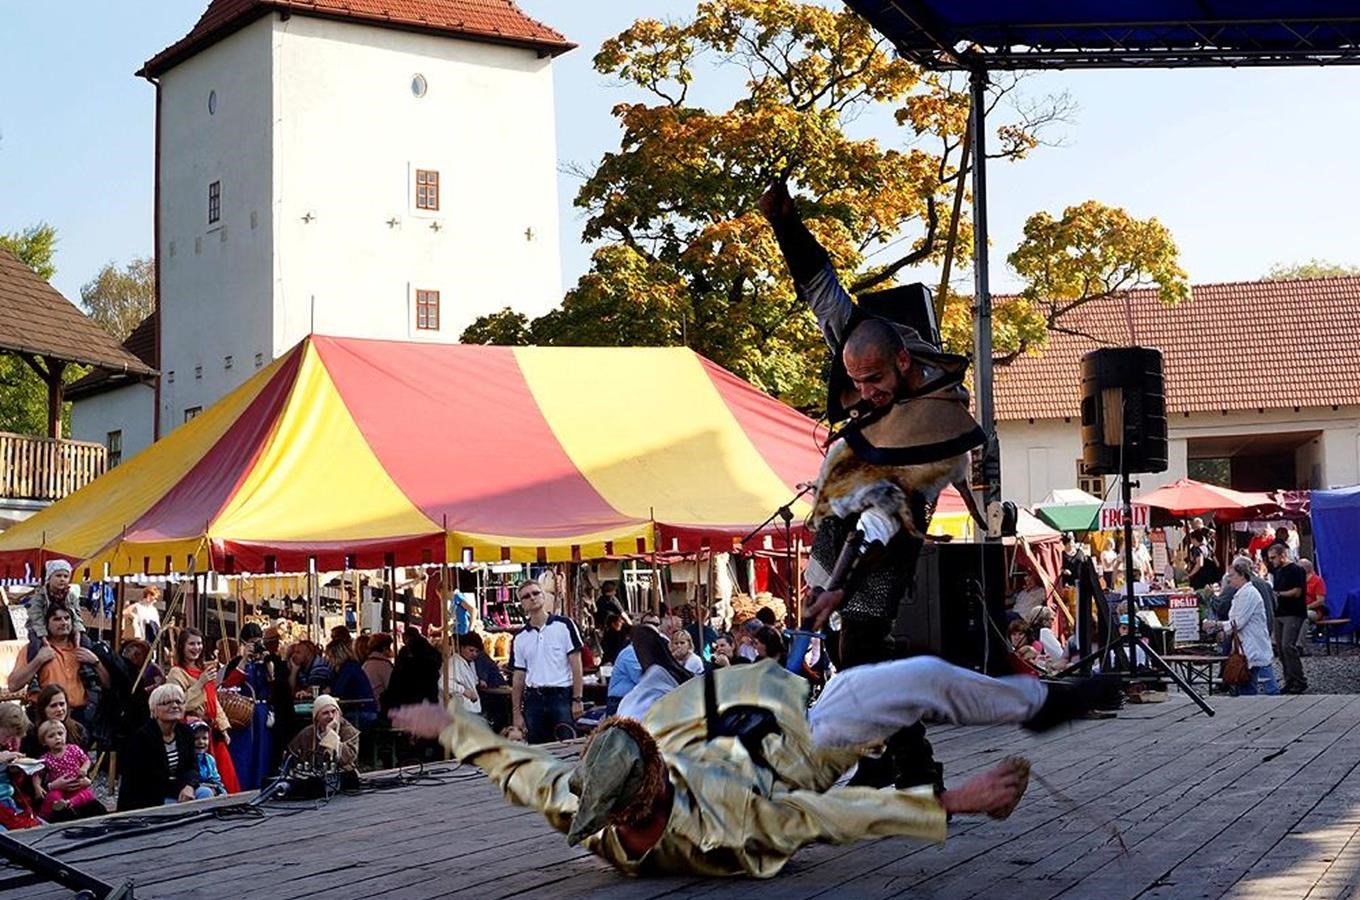 Slezskoostravský hrad zve fanoušky dobrého jídla na Hradní hodokvas